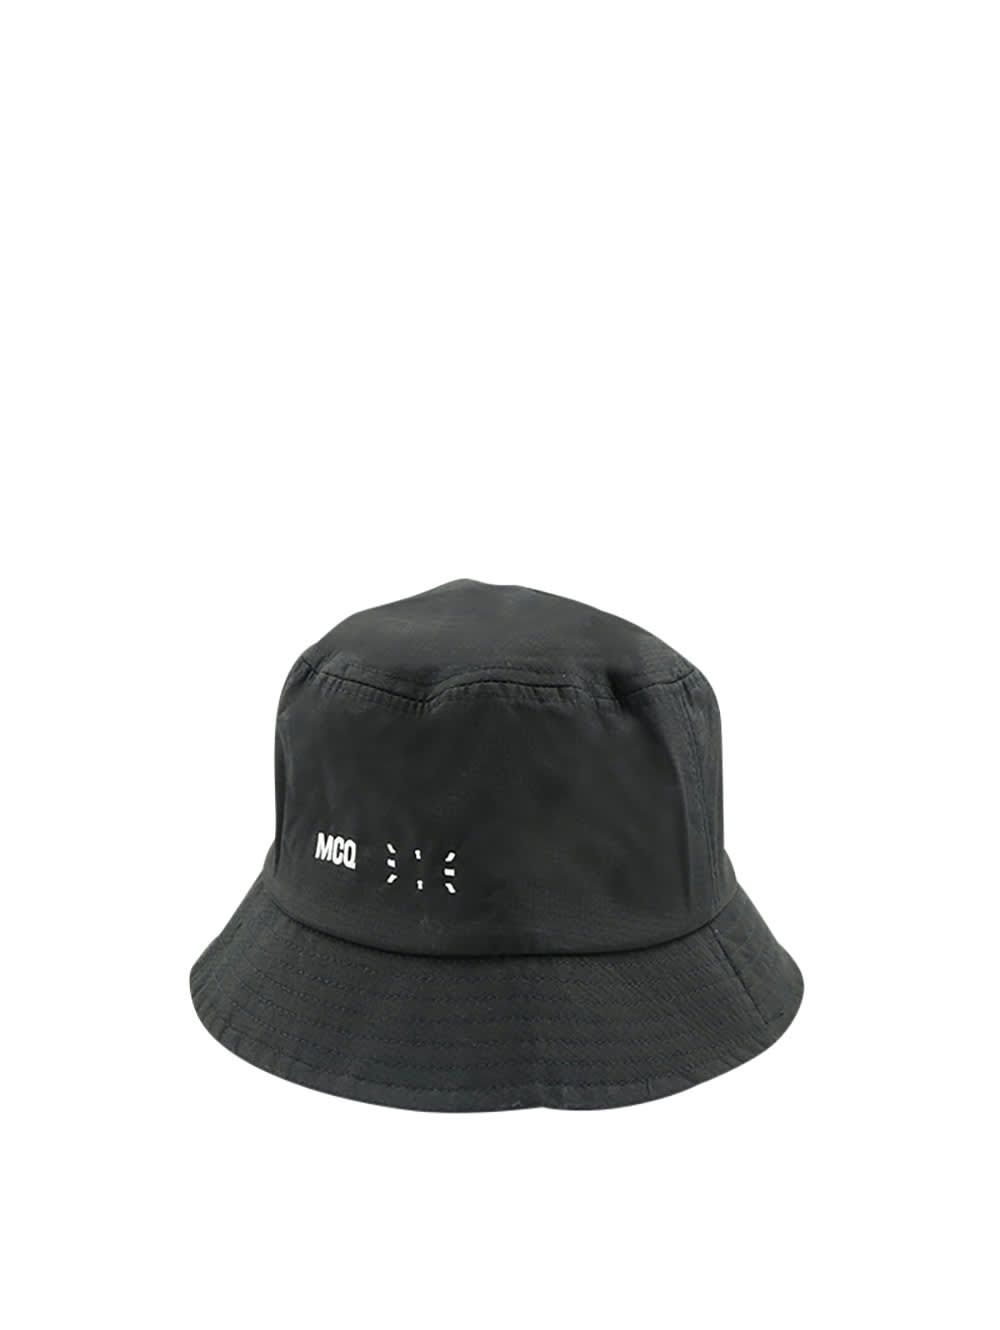 McQ Alexander McQueen Bucket Hat With Print